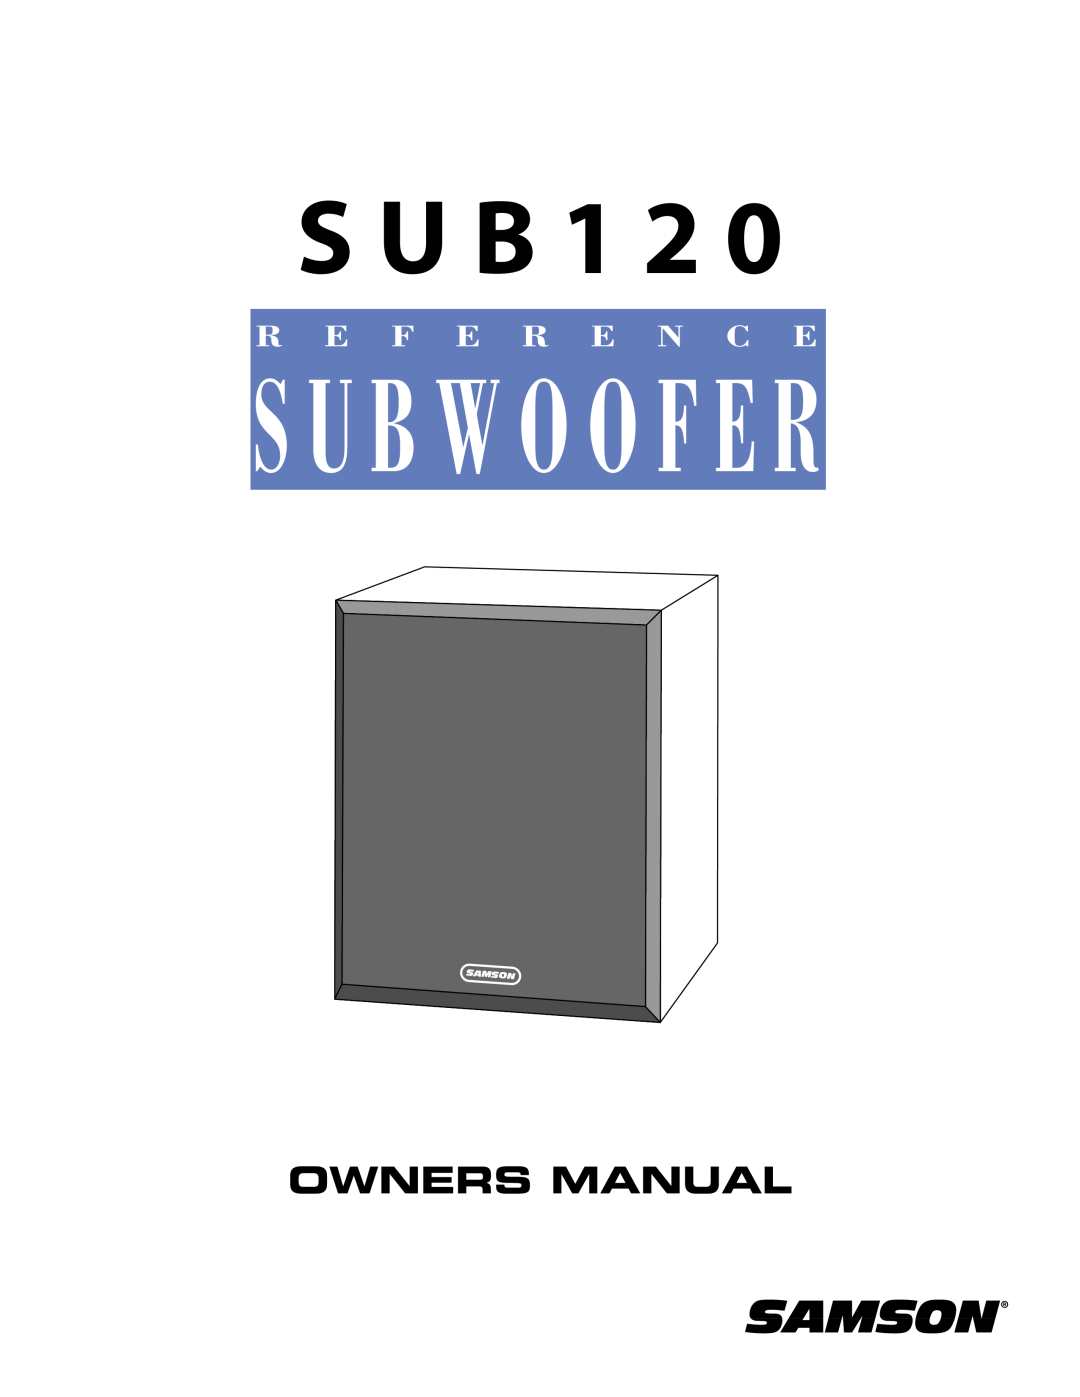 Samson Sub120 owner manual S U B 1 2, S U B W O O F E R, Owners Manual, R E F E R E N C E 